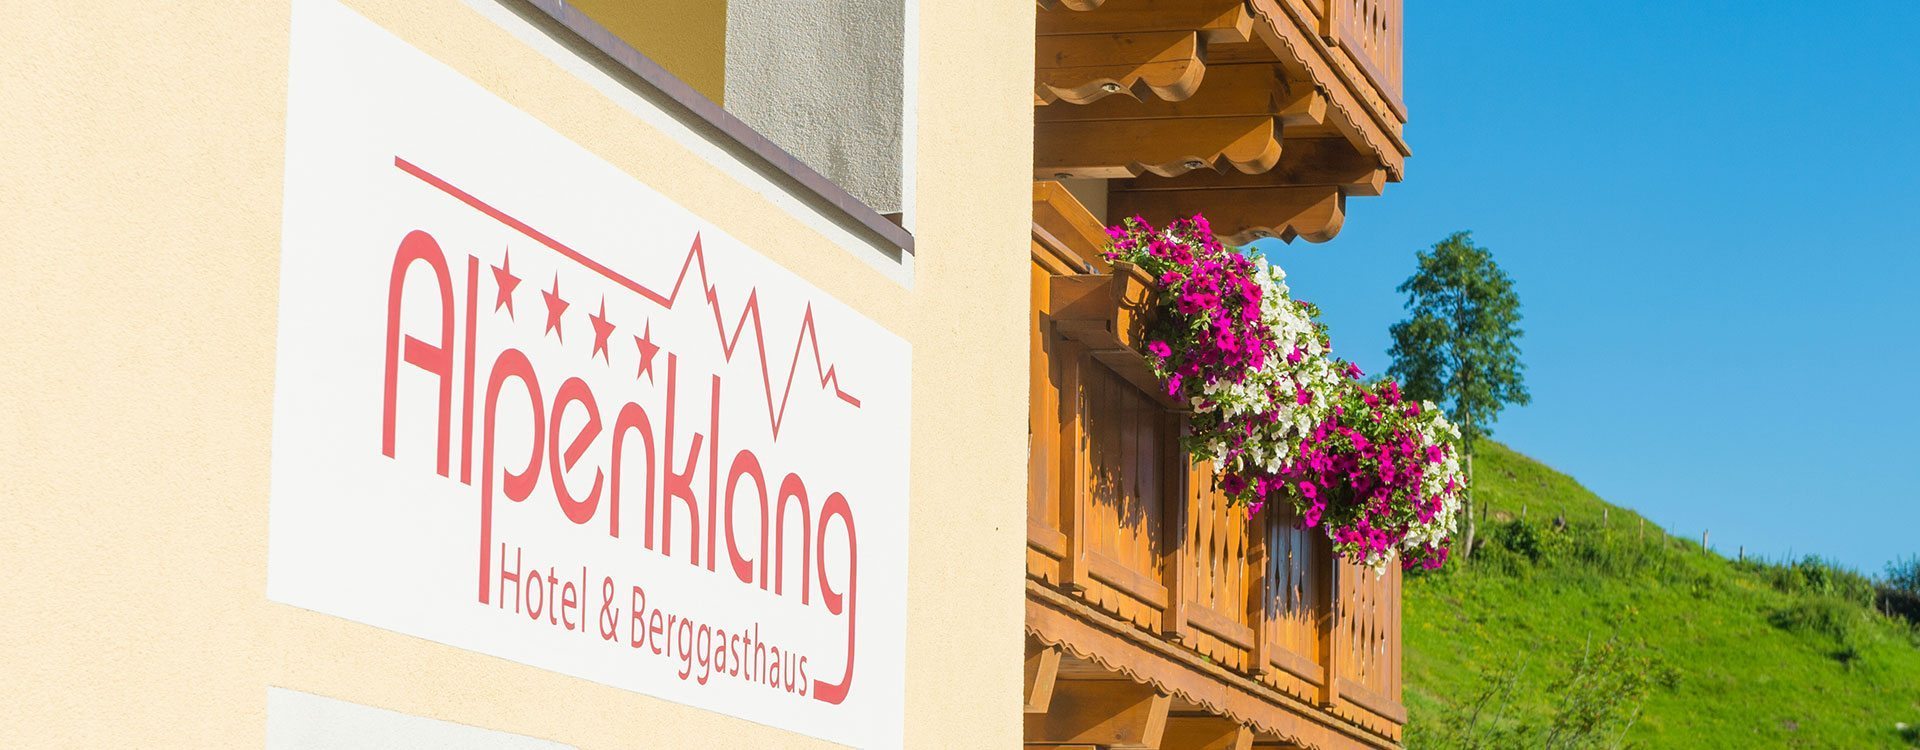 4 Sterne Hotel & Berggasthaus Alpenklang, Großarl, Salzburger Land